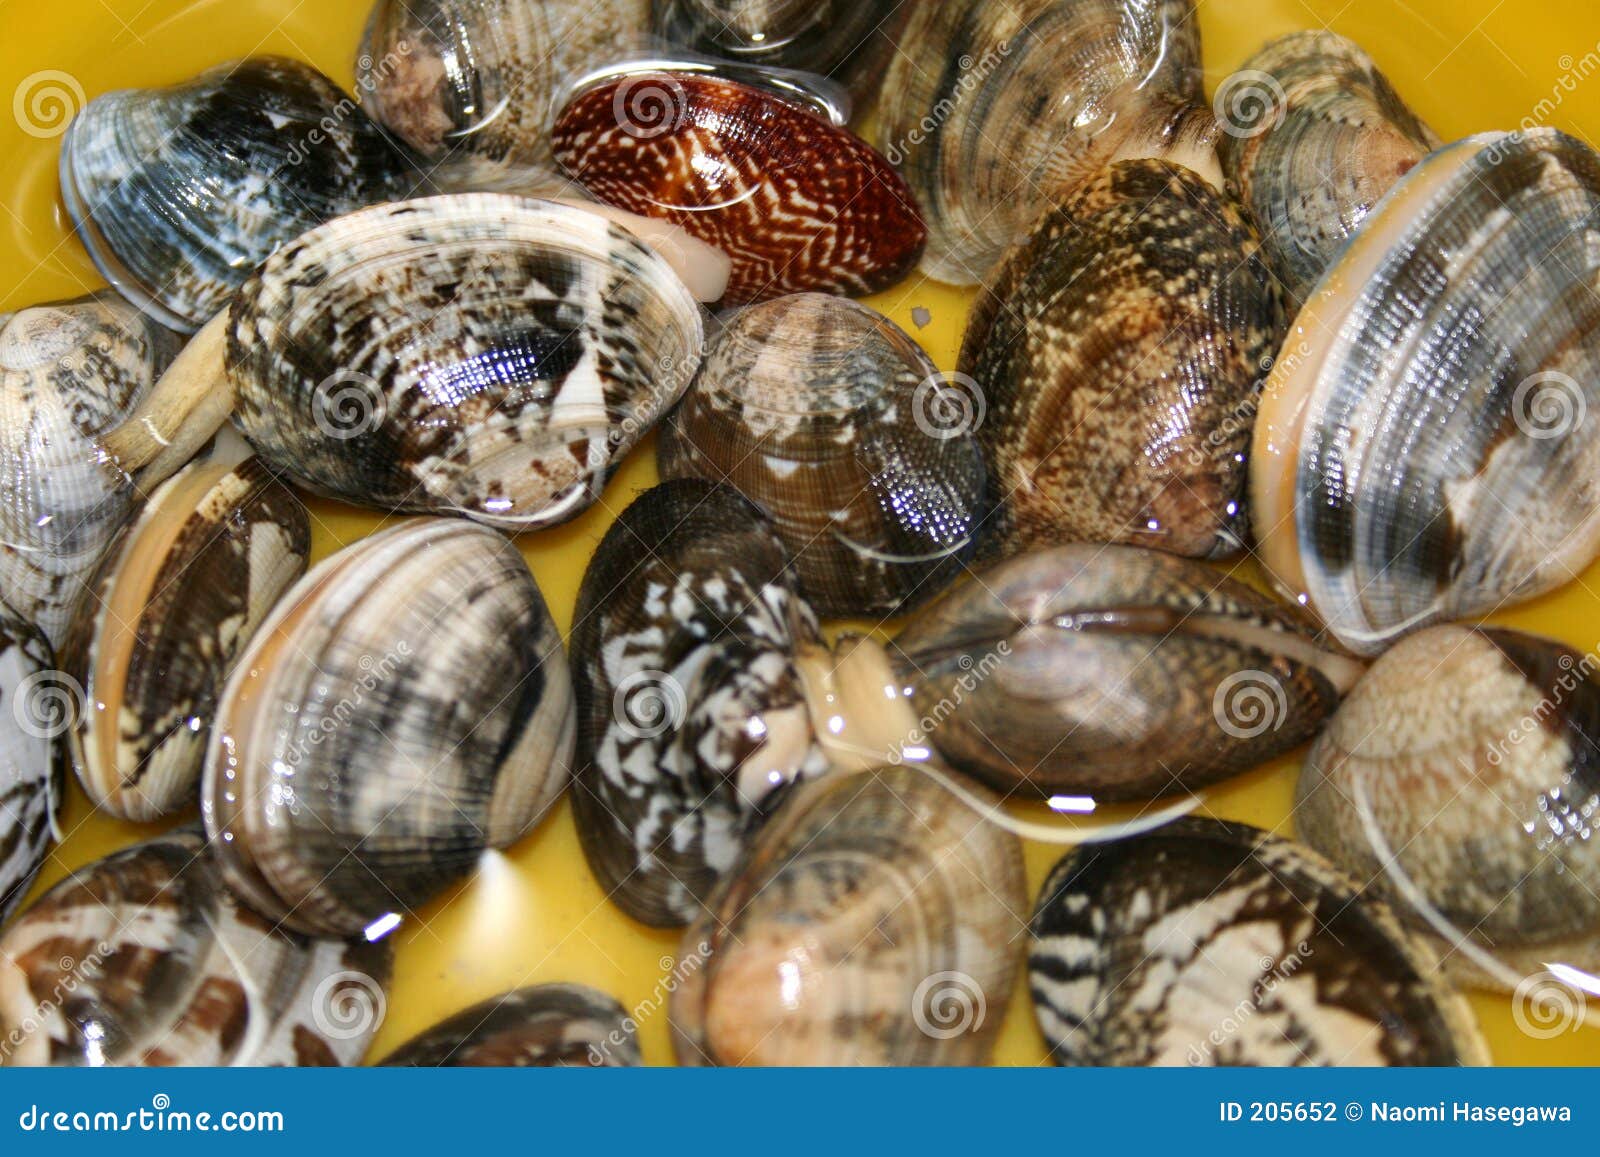 蛤蜊壳 库存照片. 图片 包括有 假期, 加勒比, 海运, 野生生物, 异乎寻常, 敌意, 爬行动物, 探险 - 5068326